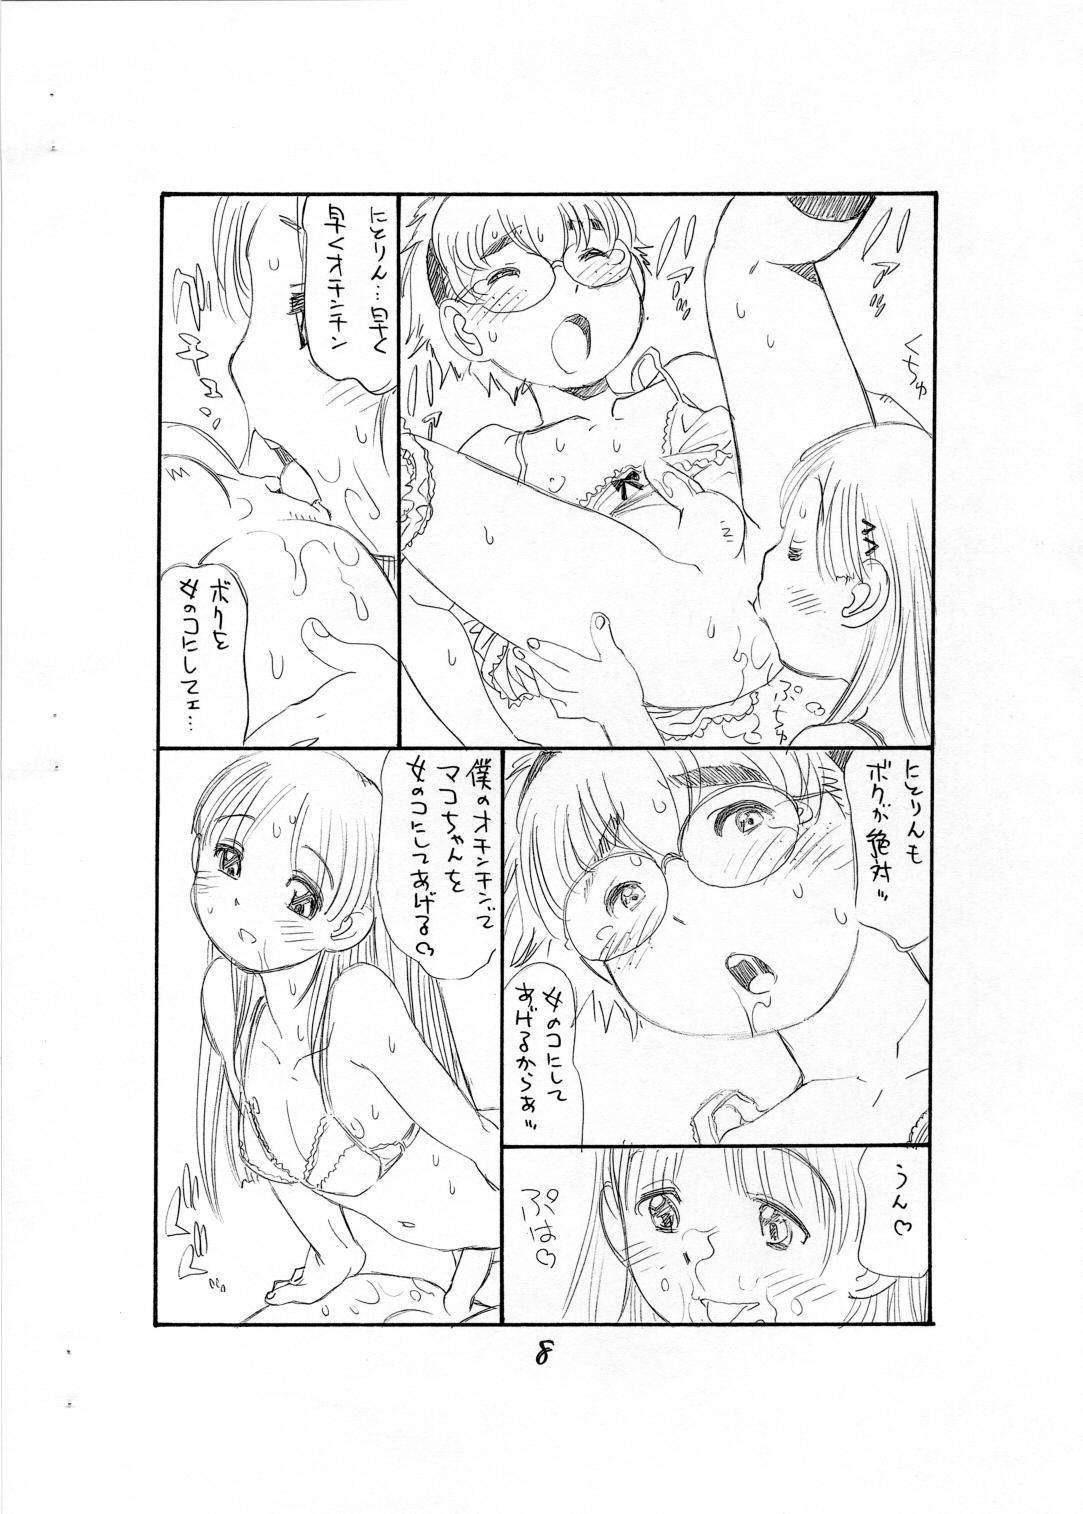 Dyke Bokutachi Otokonoko - Hourou musuko Stepbro - Page 10